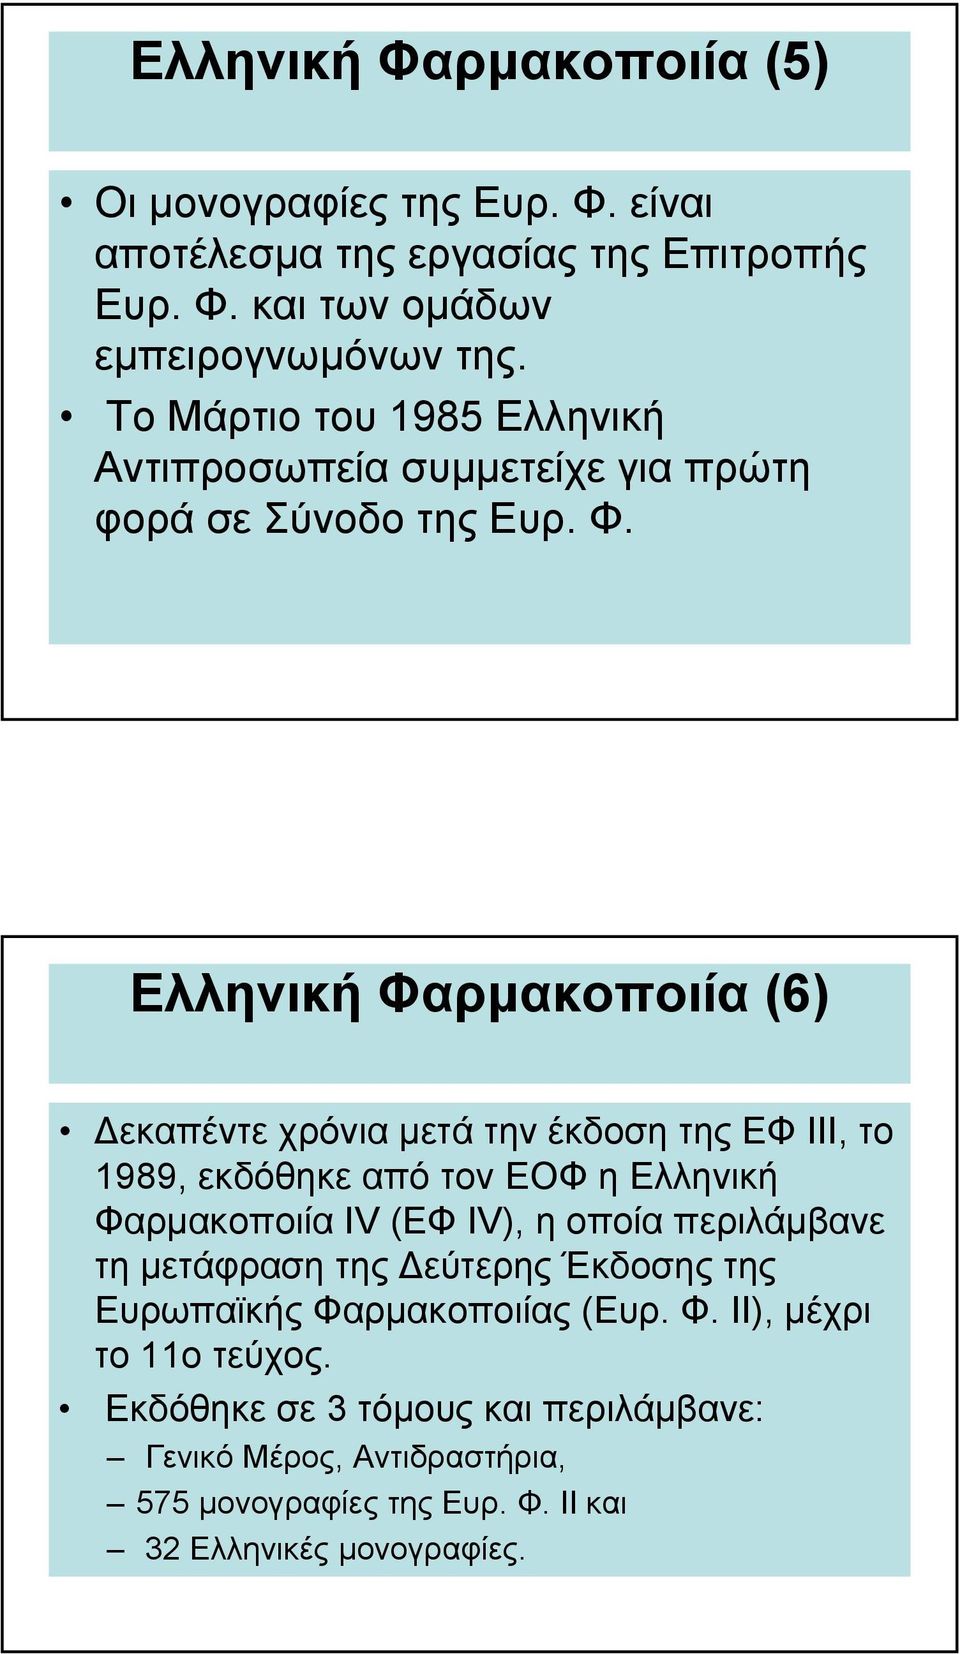 Ελληνική Φαρµακοποιία (6) εκαπέντε χρόνια µετά την έκδοση της ΕΦ ΙΙΙ, το 1989, εκδόθηκε από τον ΕΟΦ η Ελληνική Φαρµακοποιία IV (ΕΦ IV), η οποία